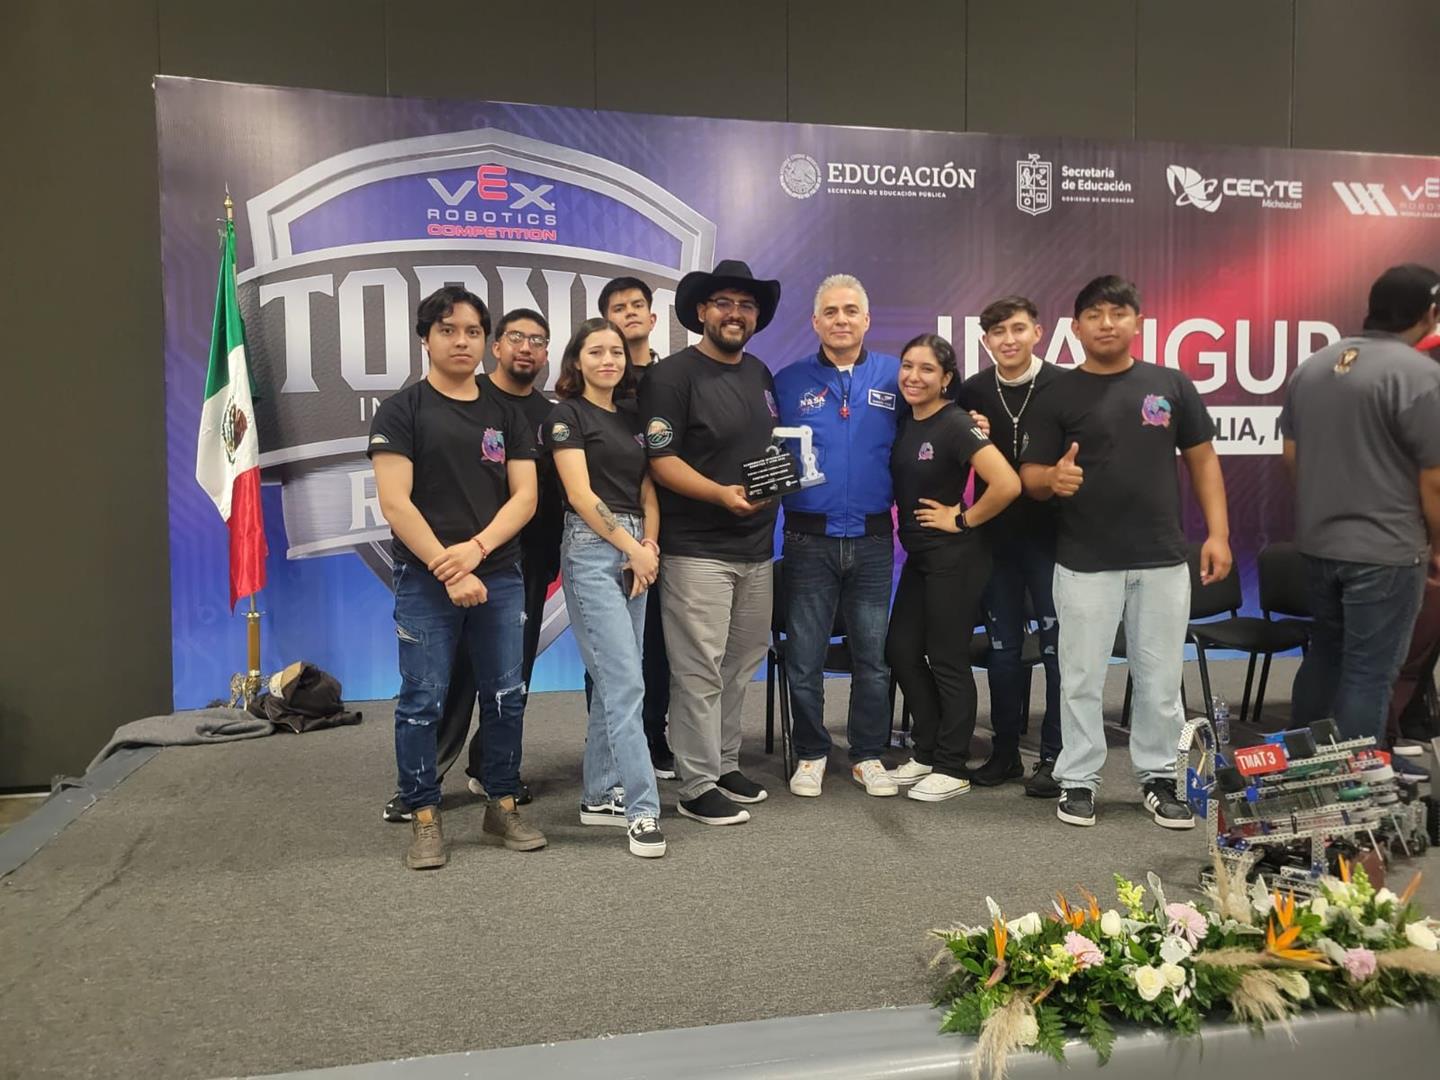 Se proclama UTPN campeón del Torneo Internacional de Robótica